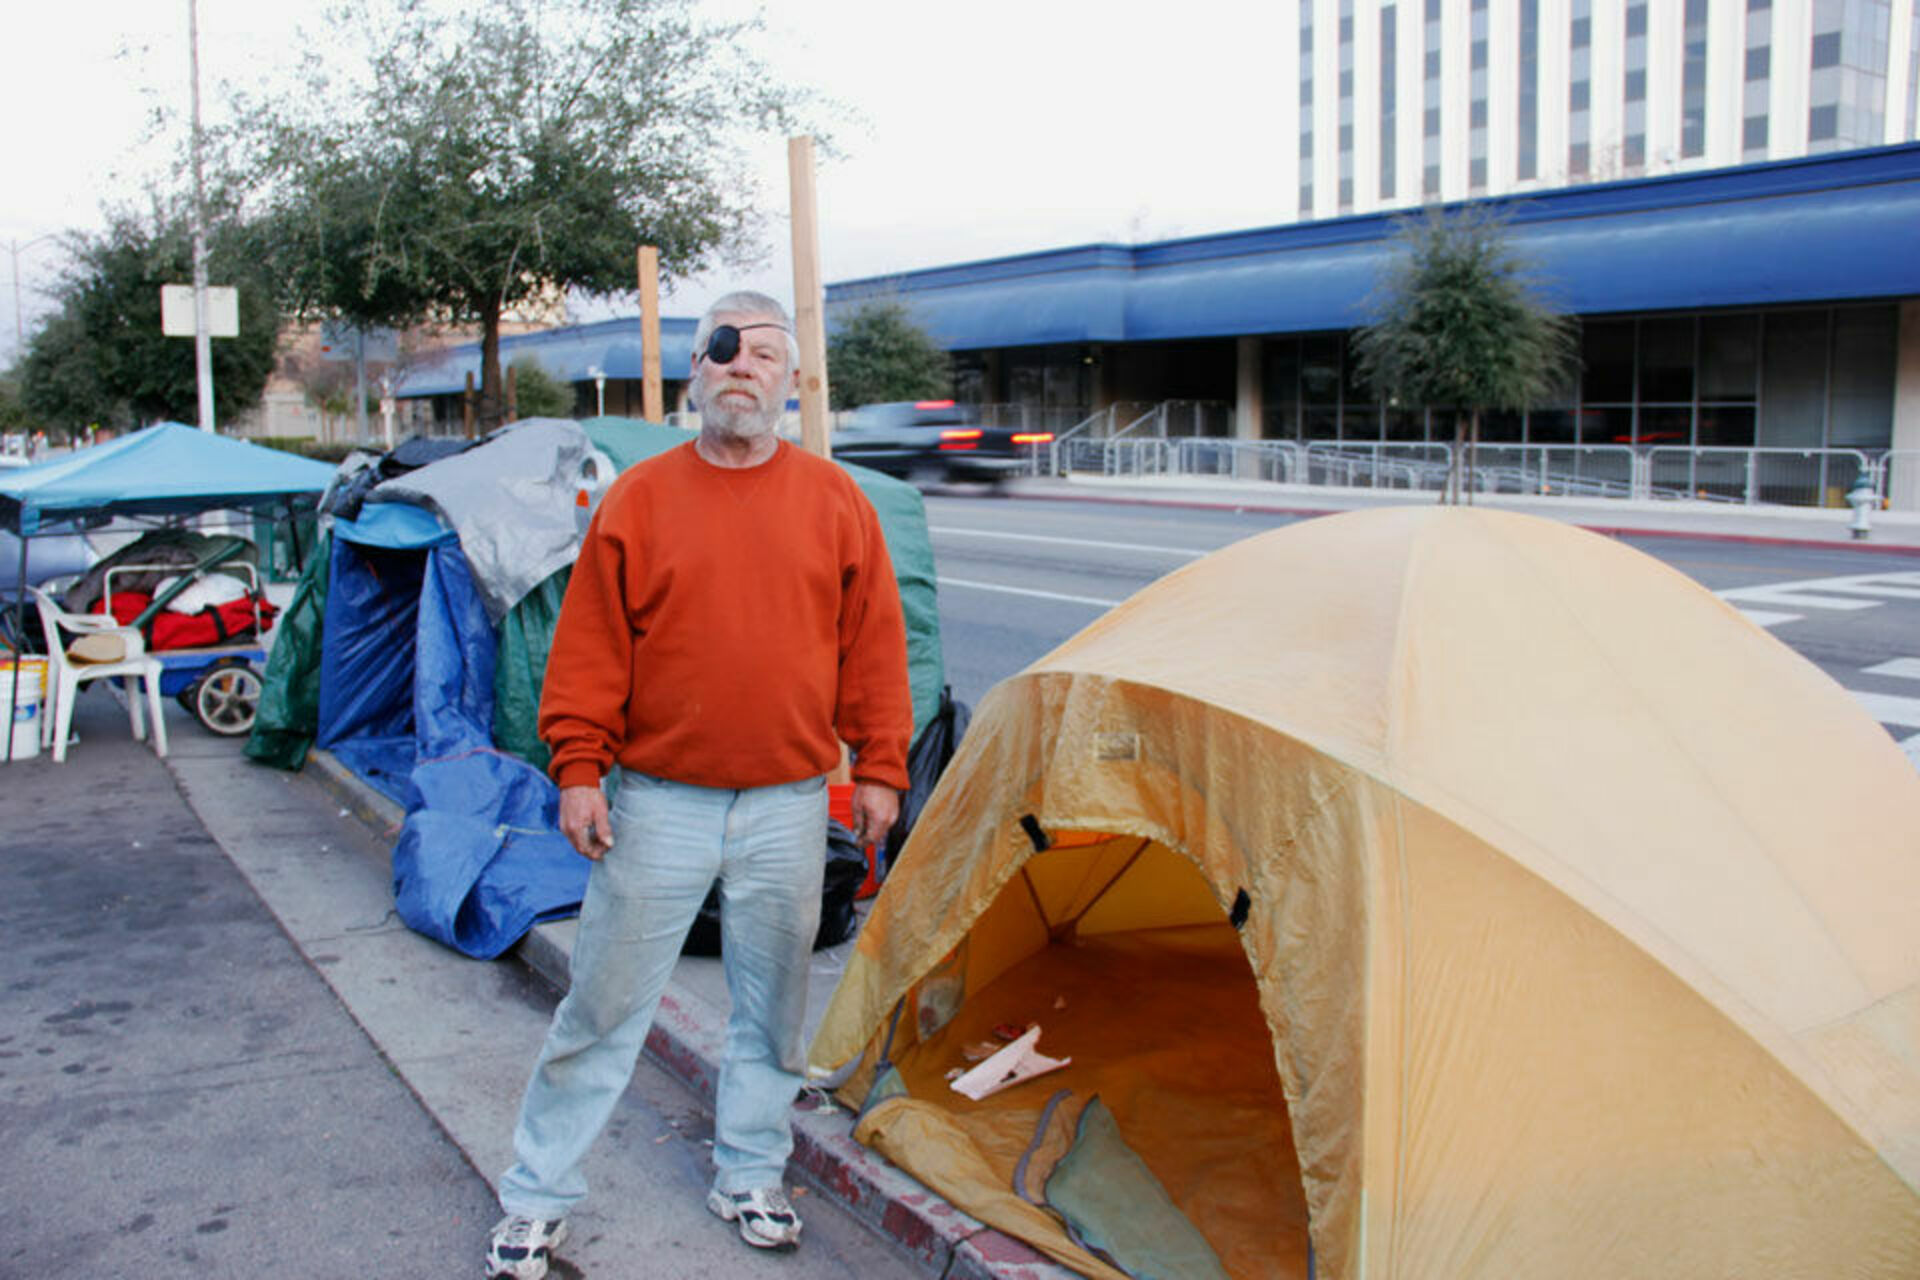 Бомжи в палатке. Лос Анджелес бомжи палатки. Палаточные городки бомжей в США. Лос Анджелес палатки бездомных. Палатки нищих Лос Анджелес.